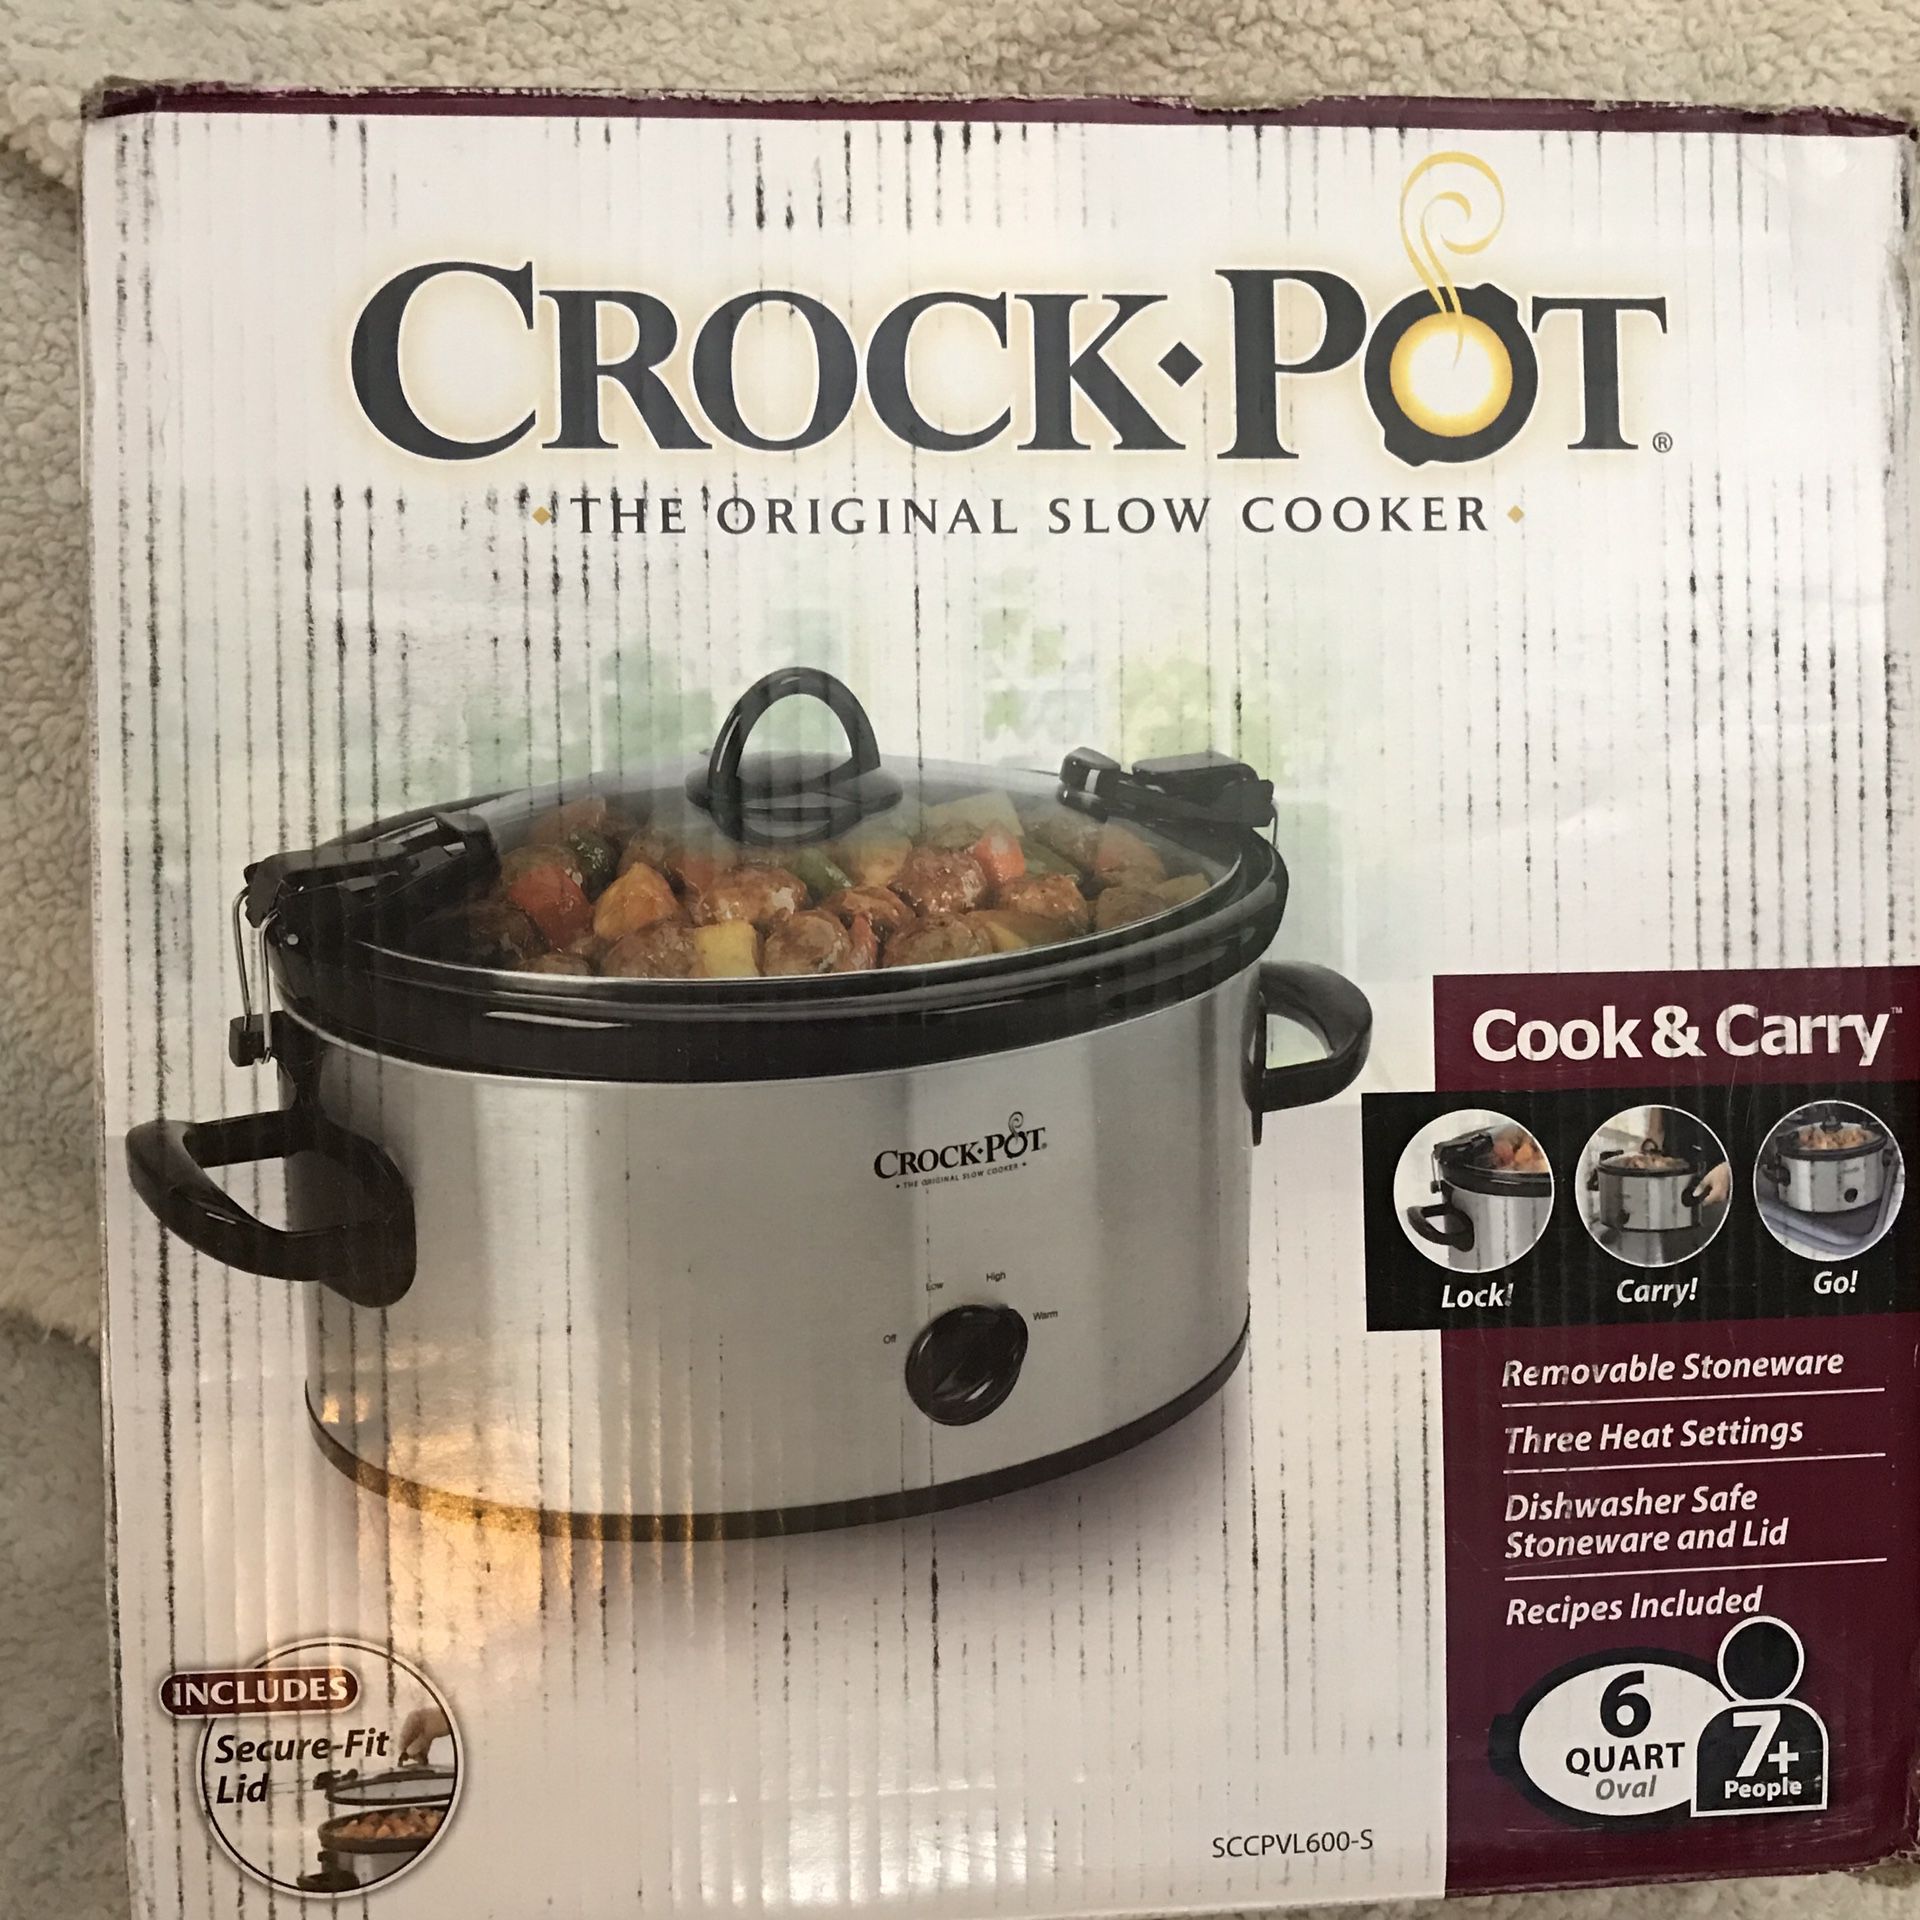 Crock-Pot Cook & Carry 6qt